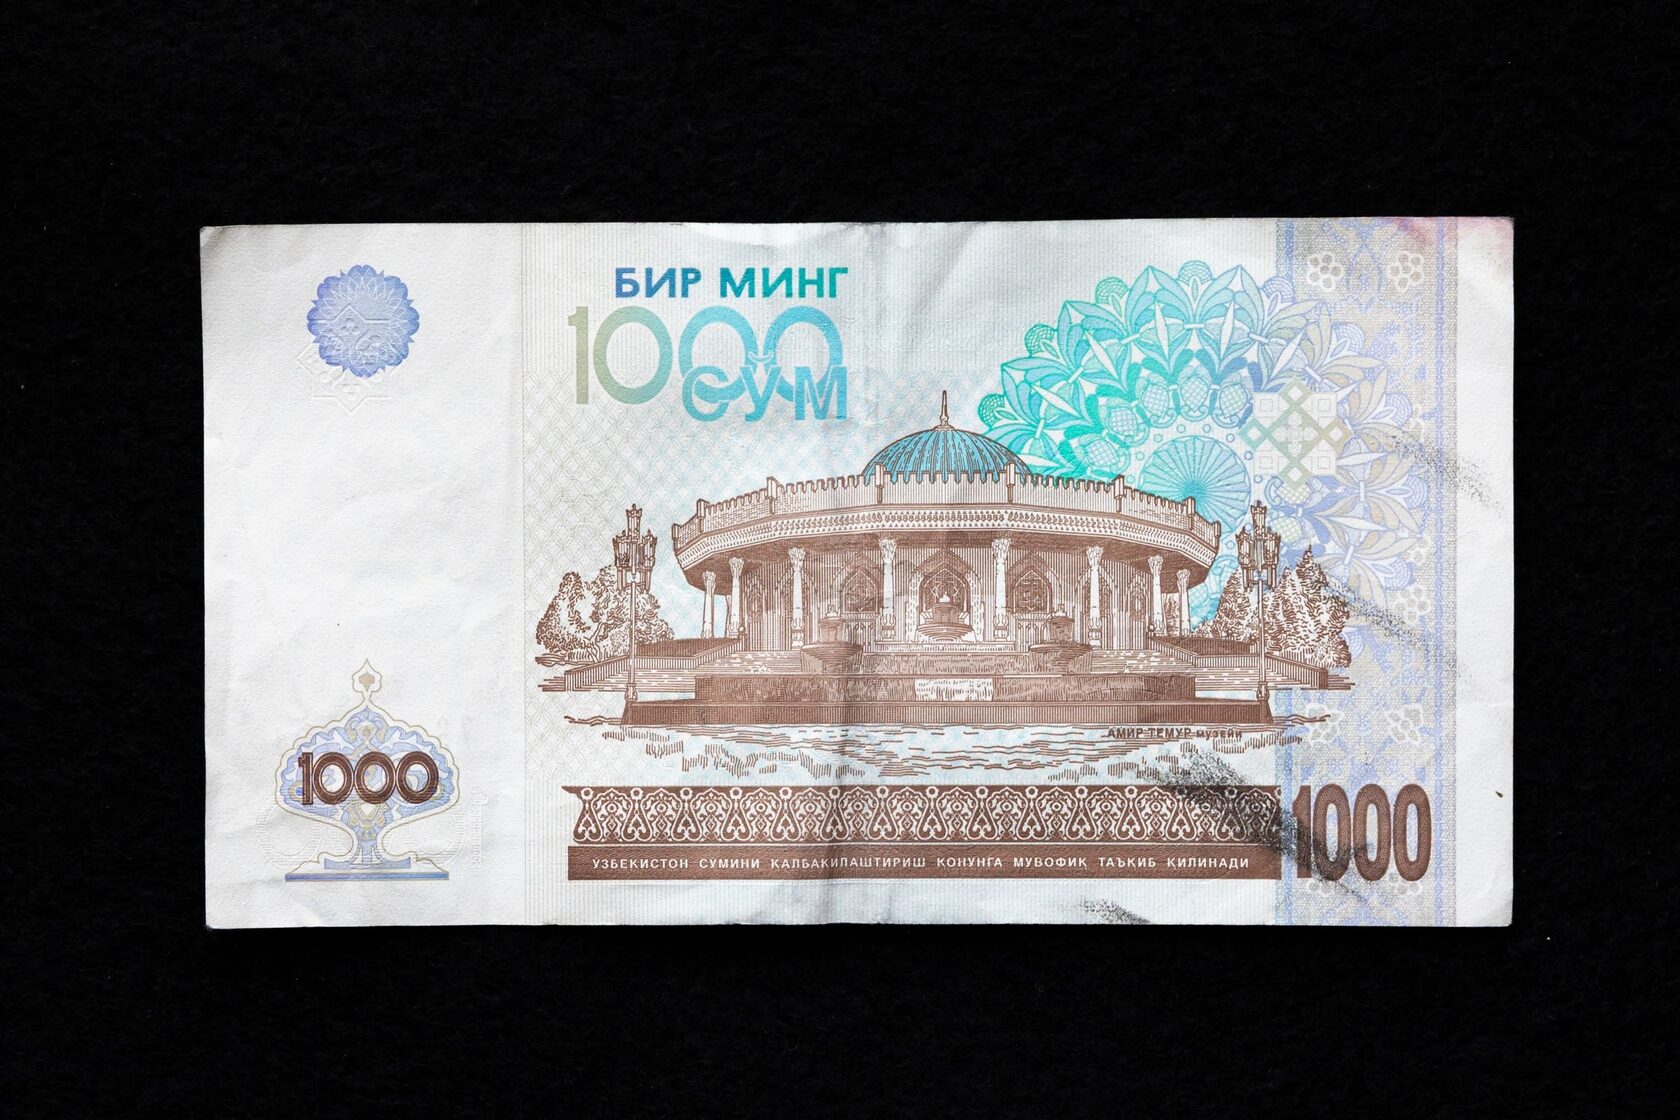 Рубль на сум узбекистан сегодня 1000. 100 Ming so'Mlik купюра. Узбекские деньги. Сум Узбекистан. Валюта Узбекистана.